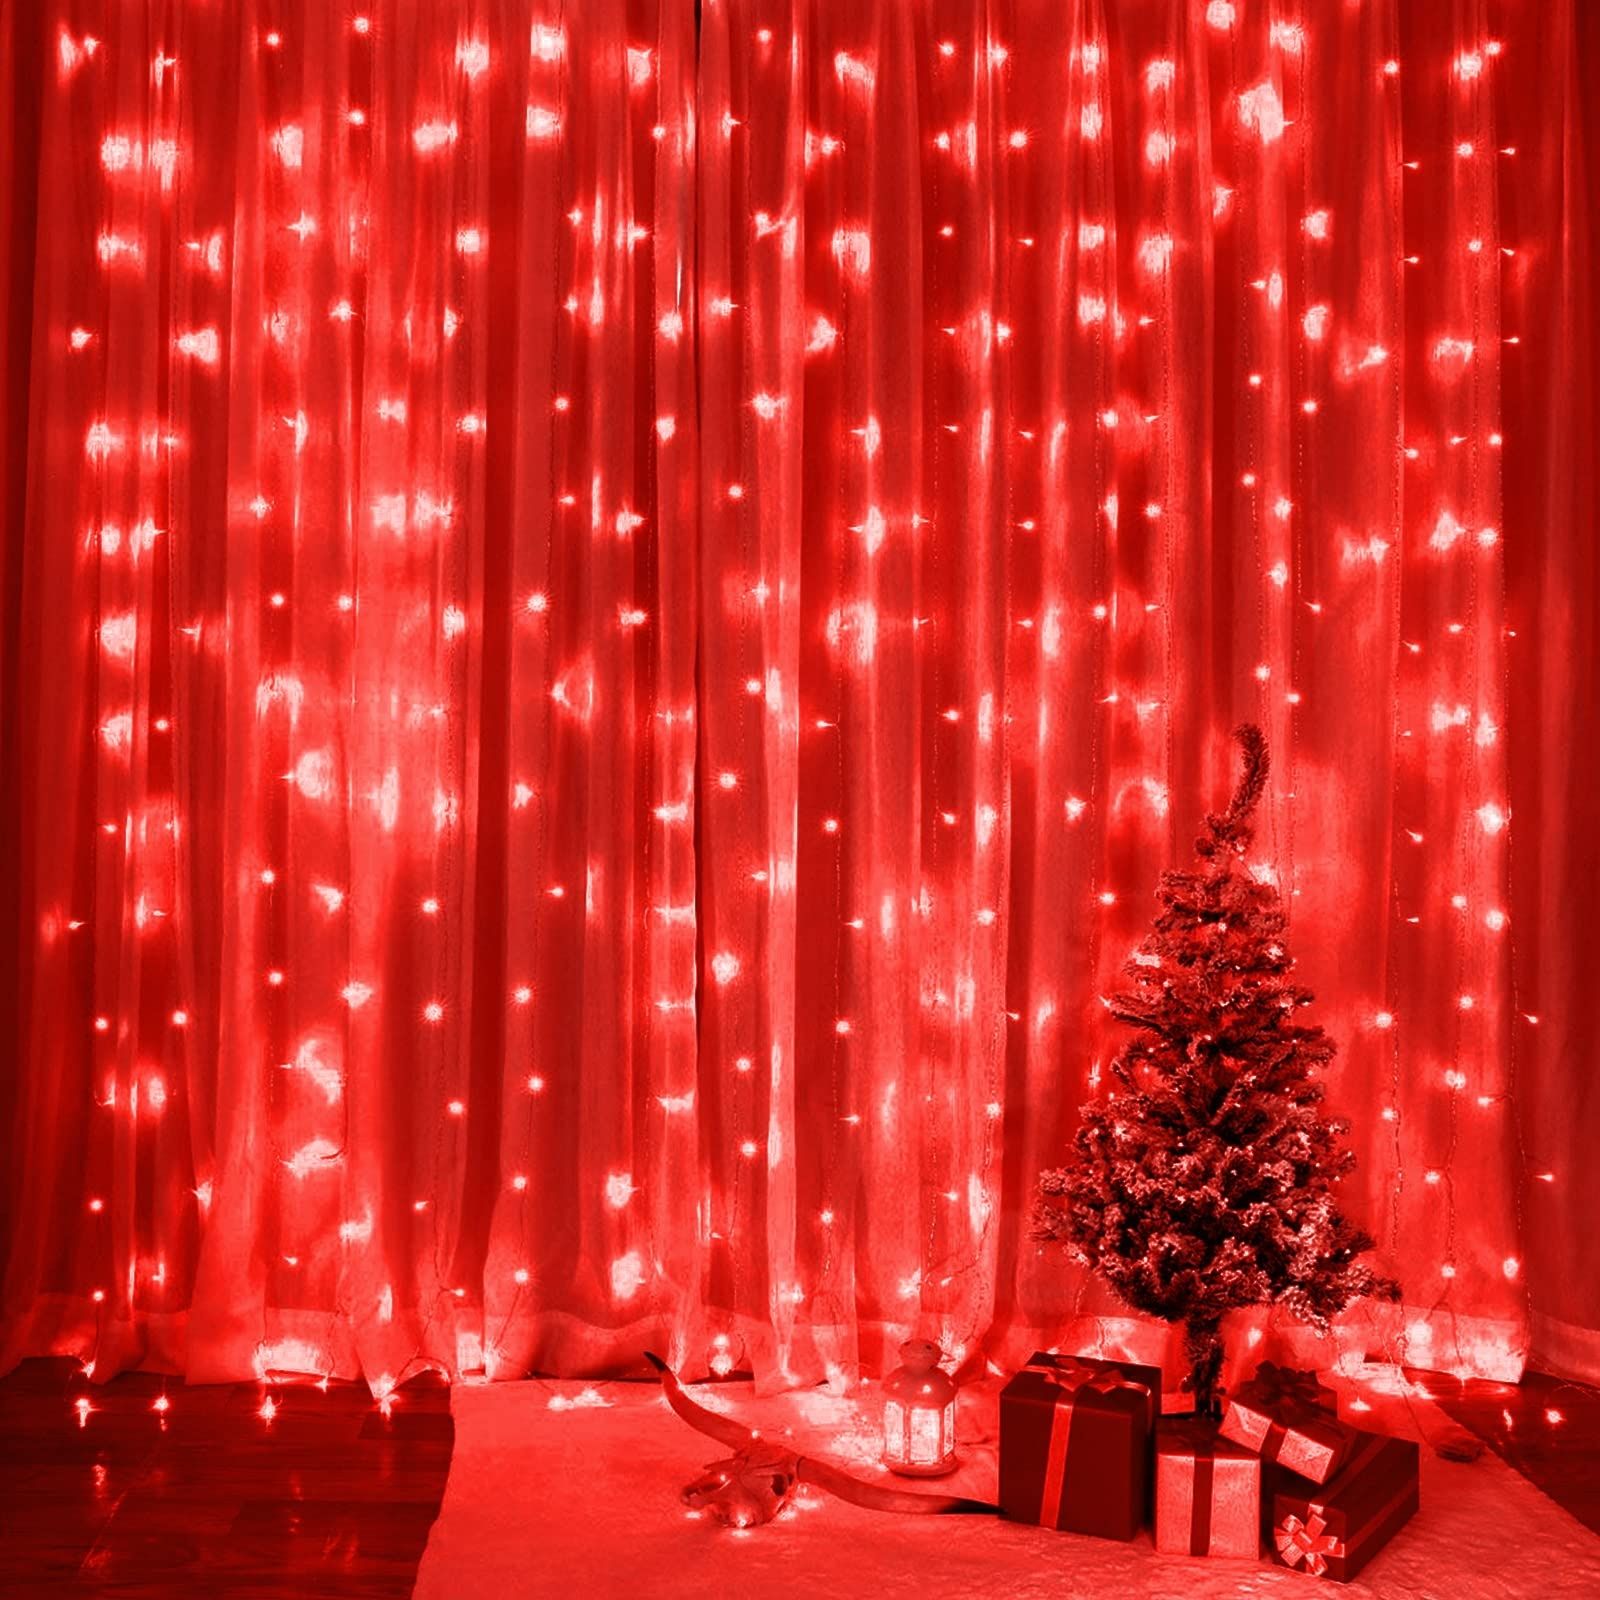 Kurtyna ledowa czerwona 3x2m 200led świetlna lampki girlanda dekoracja